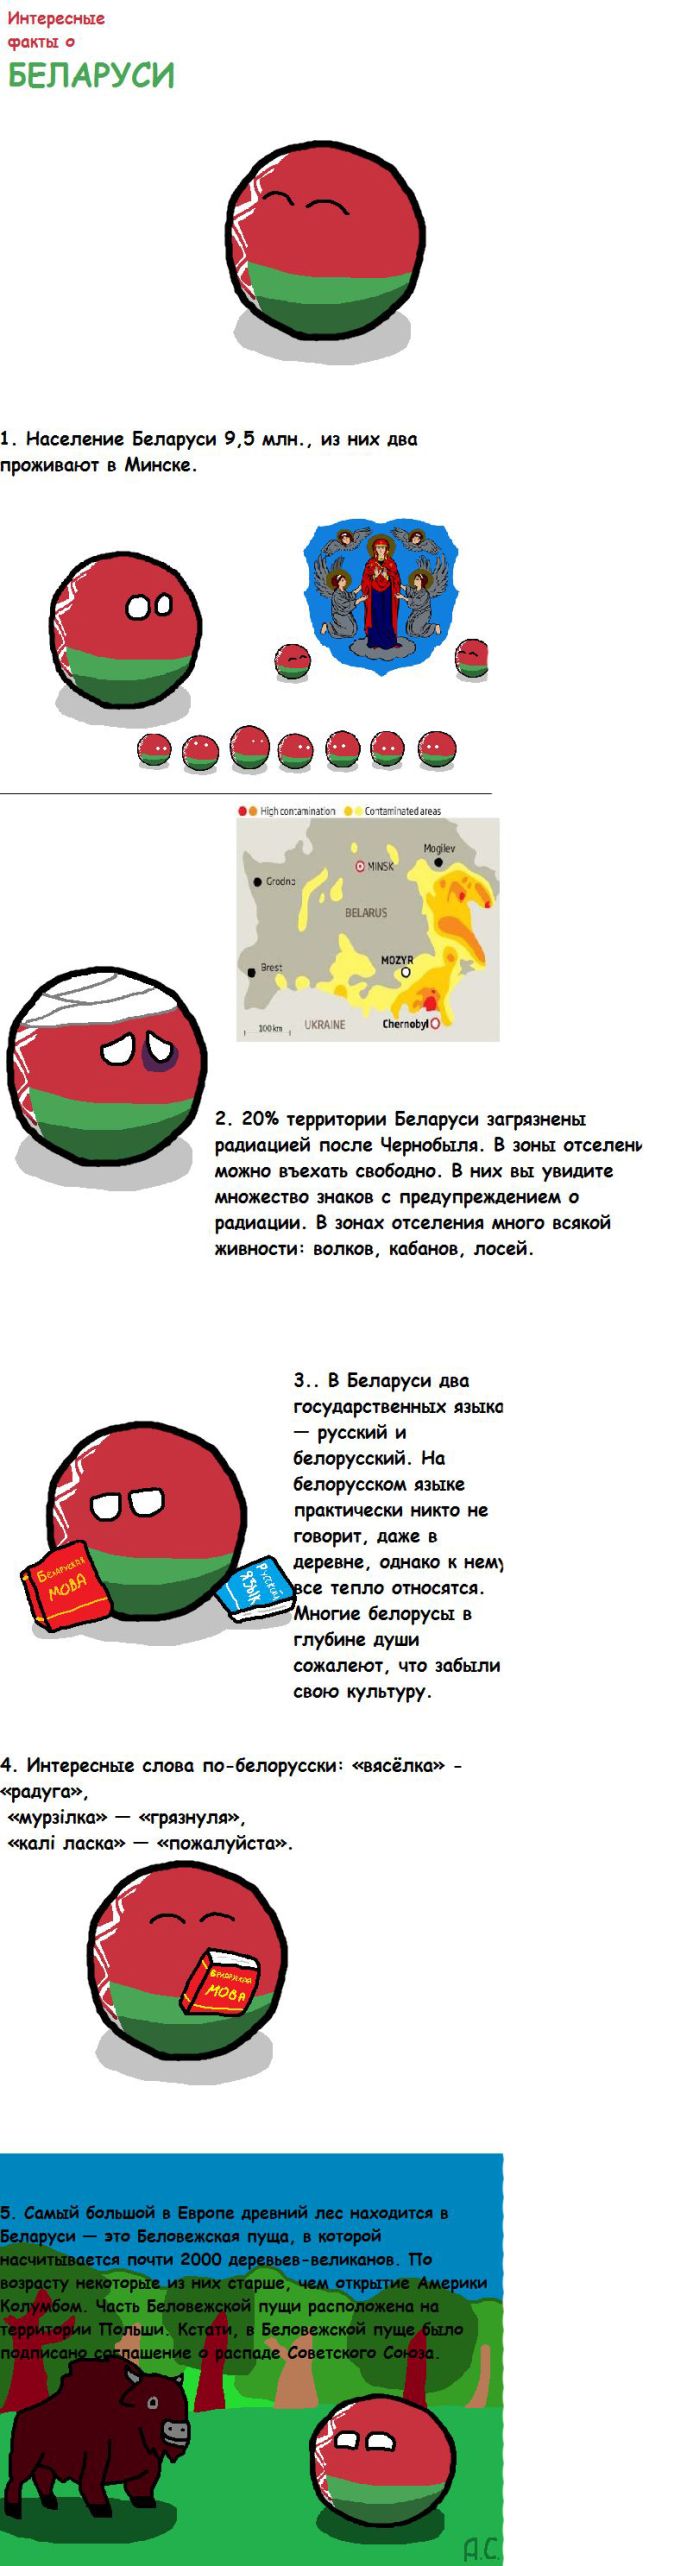 Познавательные факты о Белоруссии